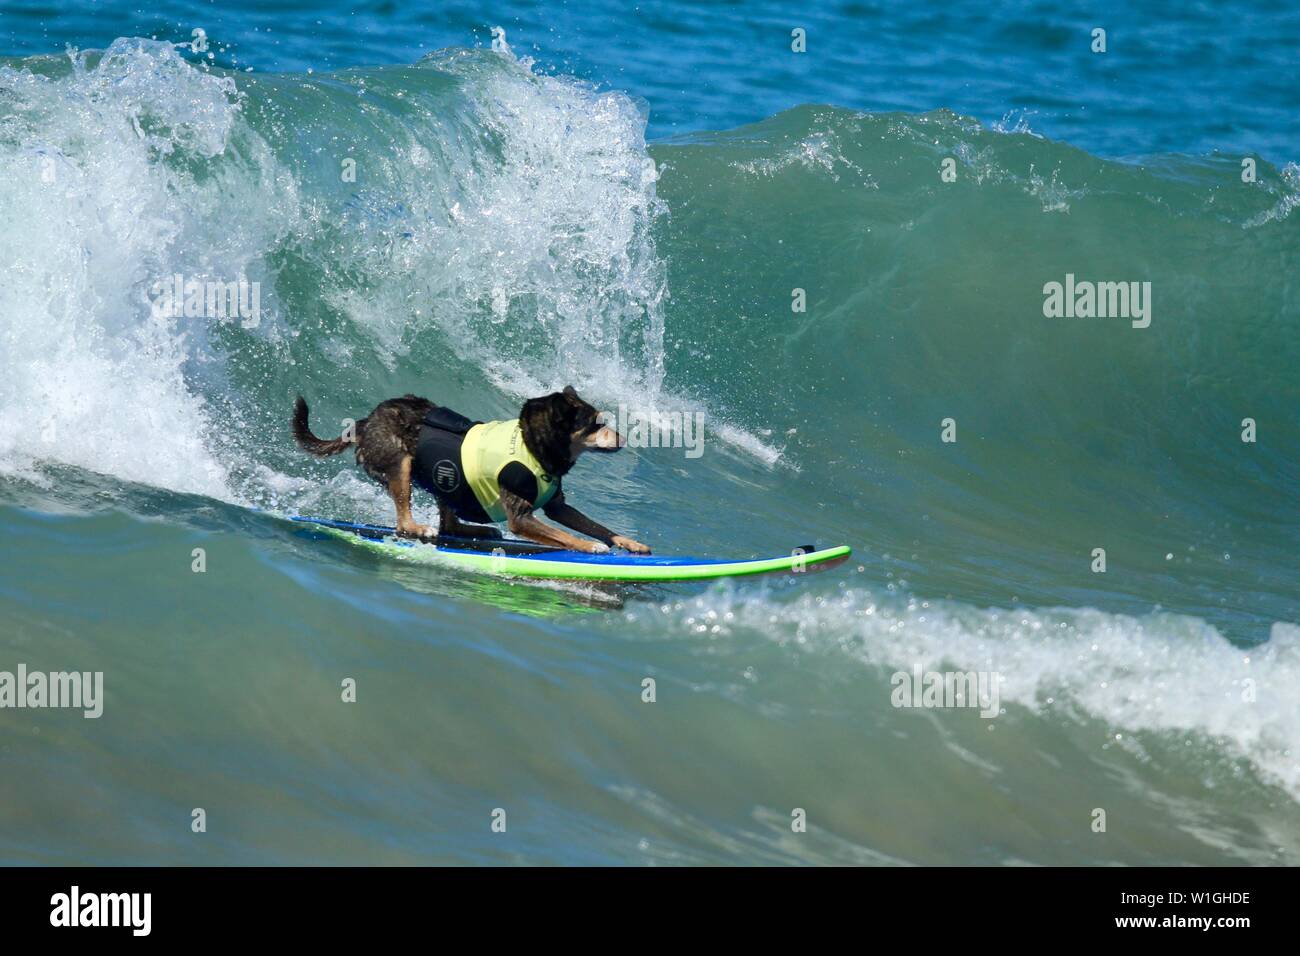 Abbie l'Australian kelpie dog surf une vague à un chien en cas de surf Huntington Beach Californie Banque D'Images